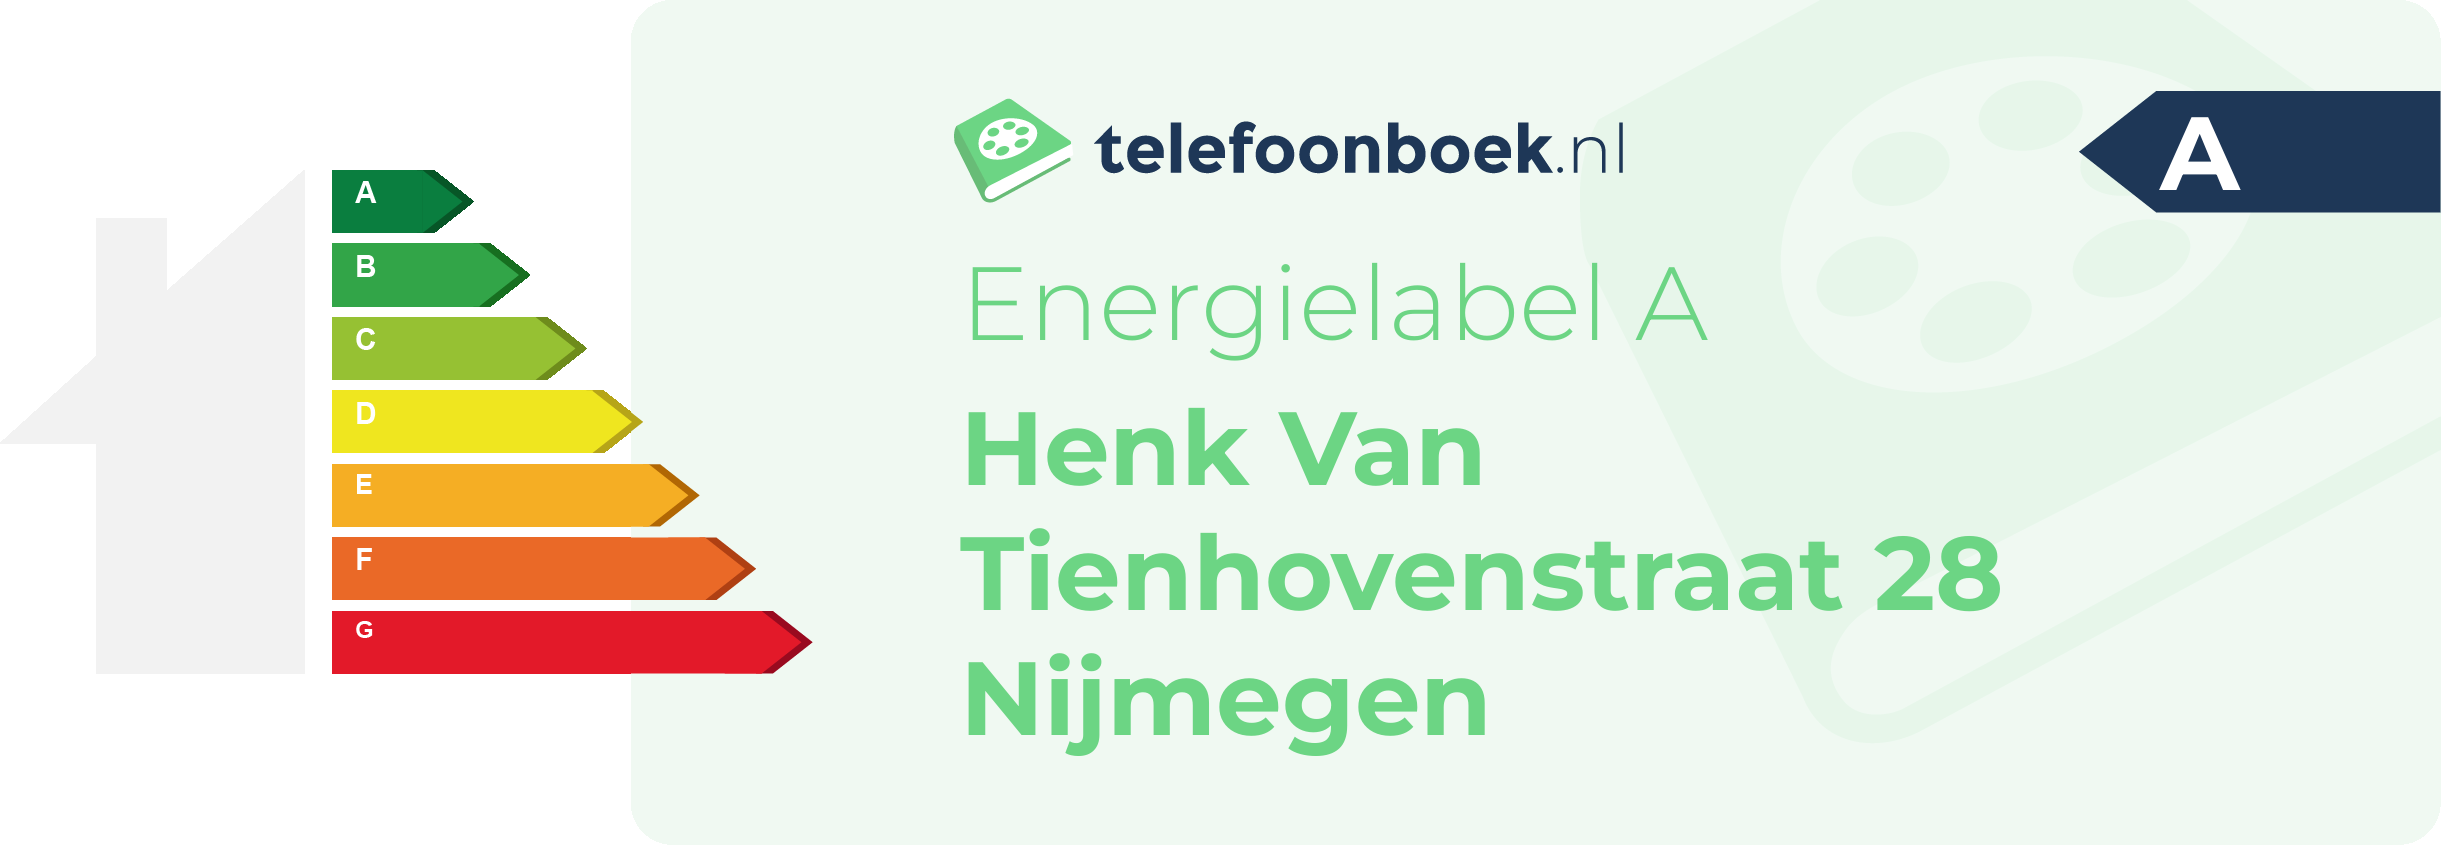 Energielabel Henk Van Tienhovenstraat 28 Nijmegen